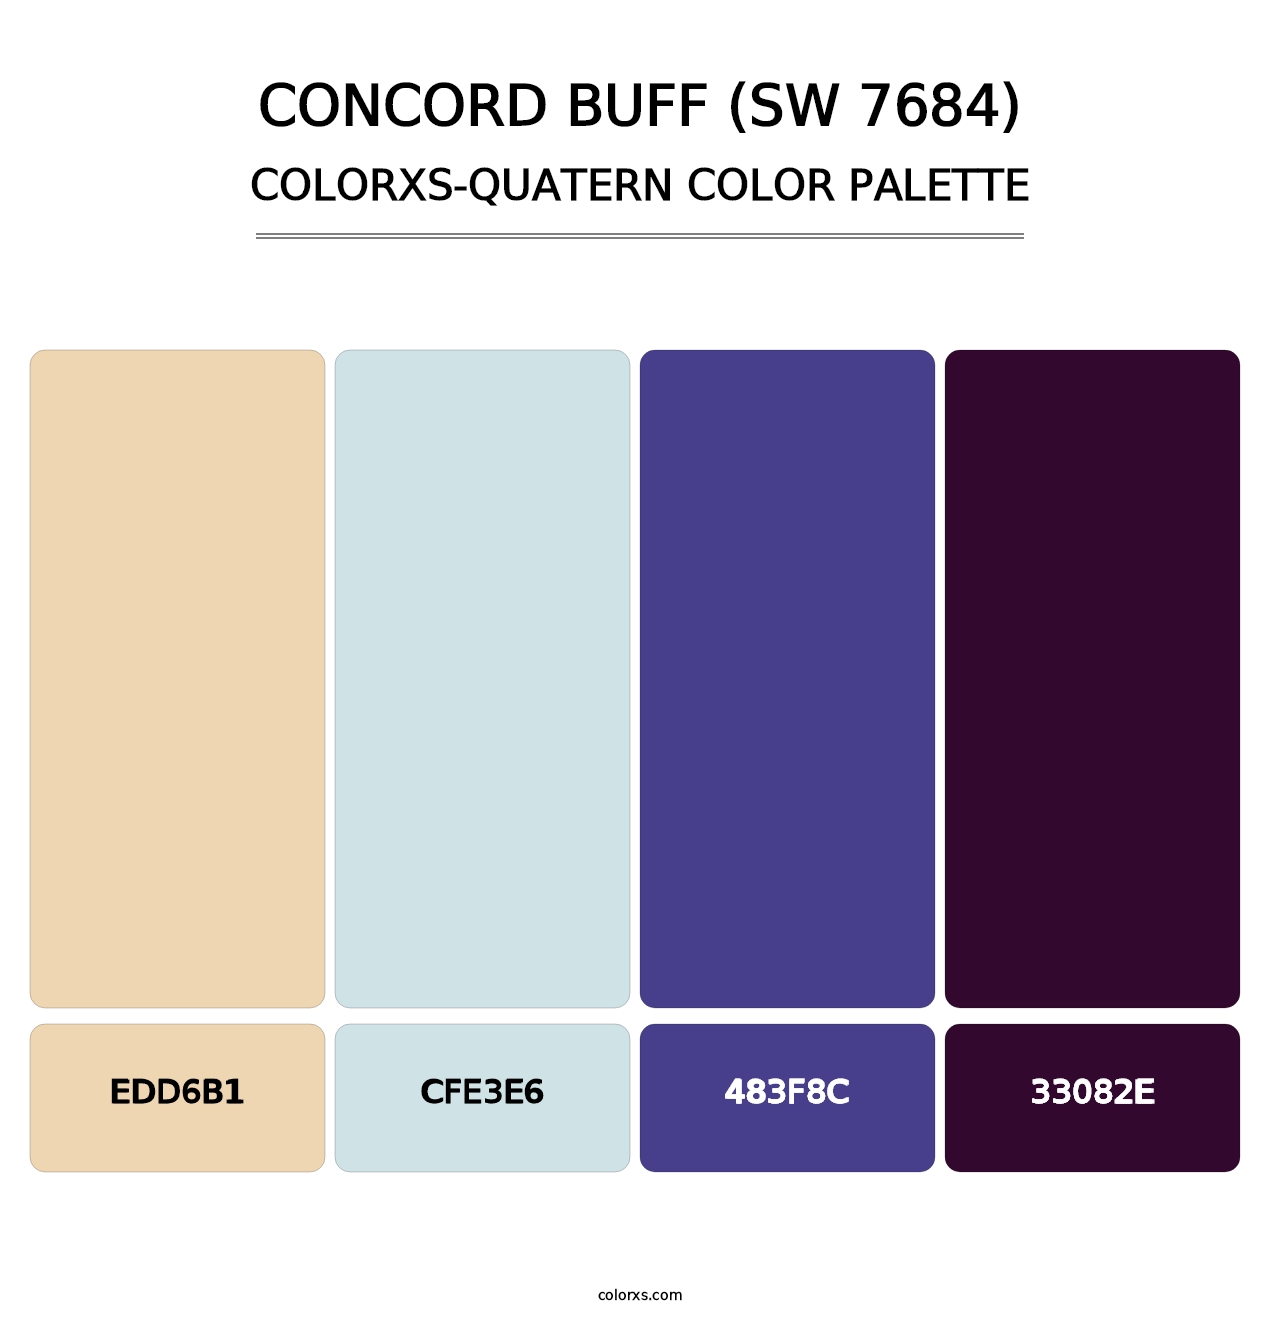 Concord Buff (SW 7684) - Colorxs Quatern Palette